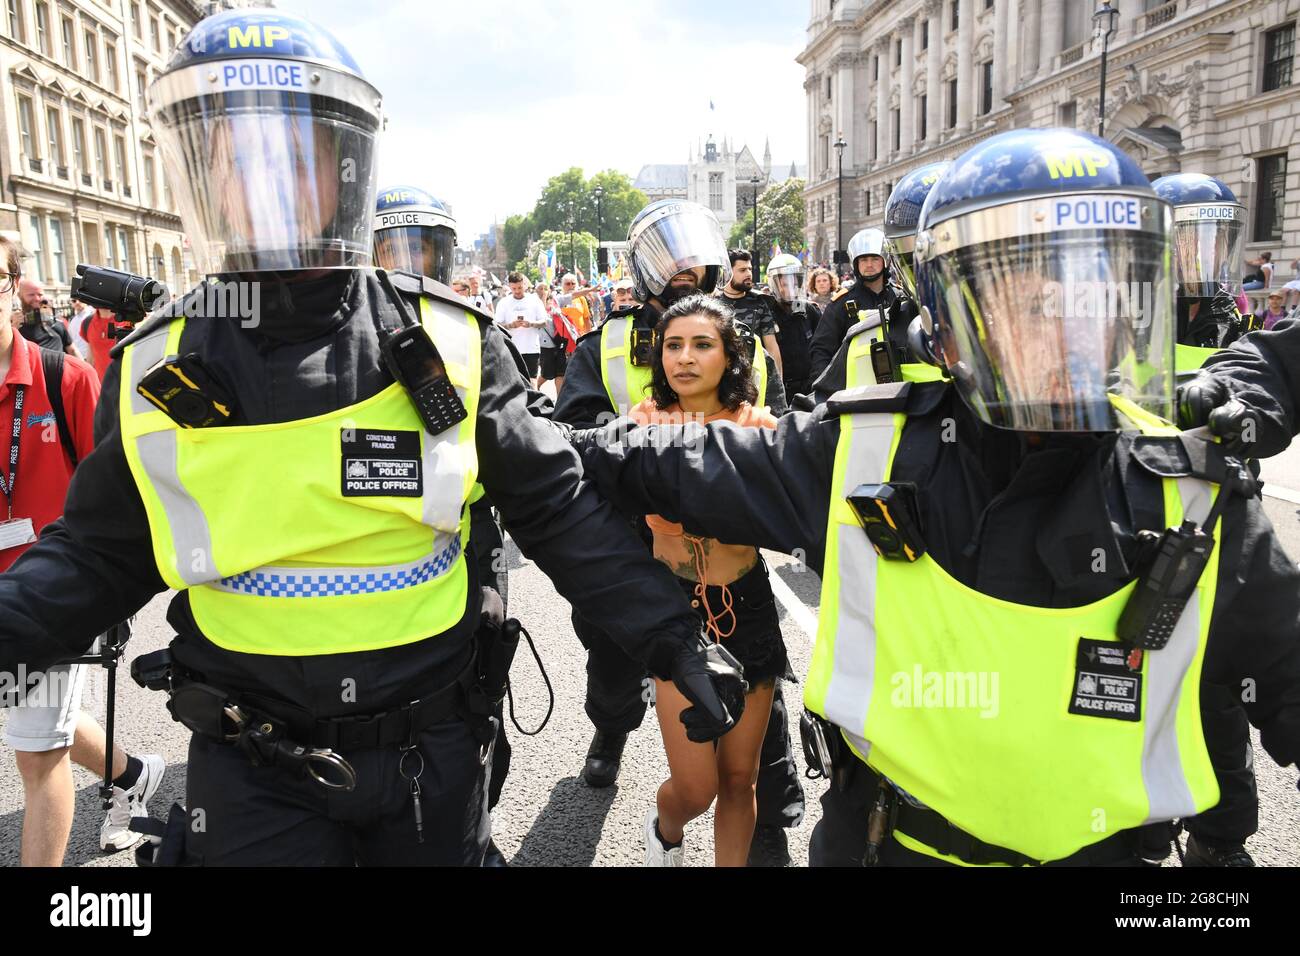 Eine Frau wird von der Polizei weggeführt, als Anti-Impfdemonstranten auf dem Parliament Square in London eine Demonstration abhalten, nachdem die endgültigen rechtlichen Beschränkungen in England aufgehoben wurden. Bilddatum: Montag, 19. Juli 2021. Stockfoto